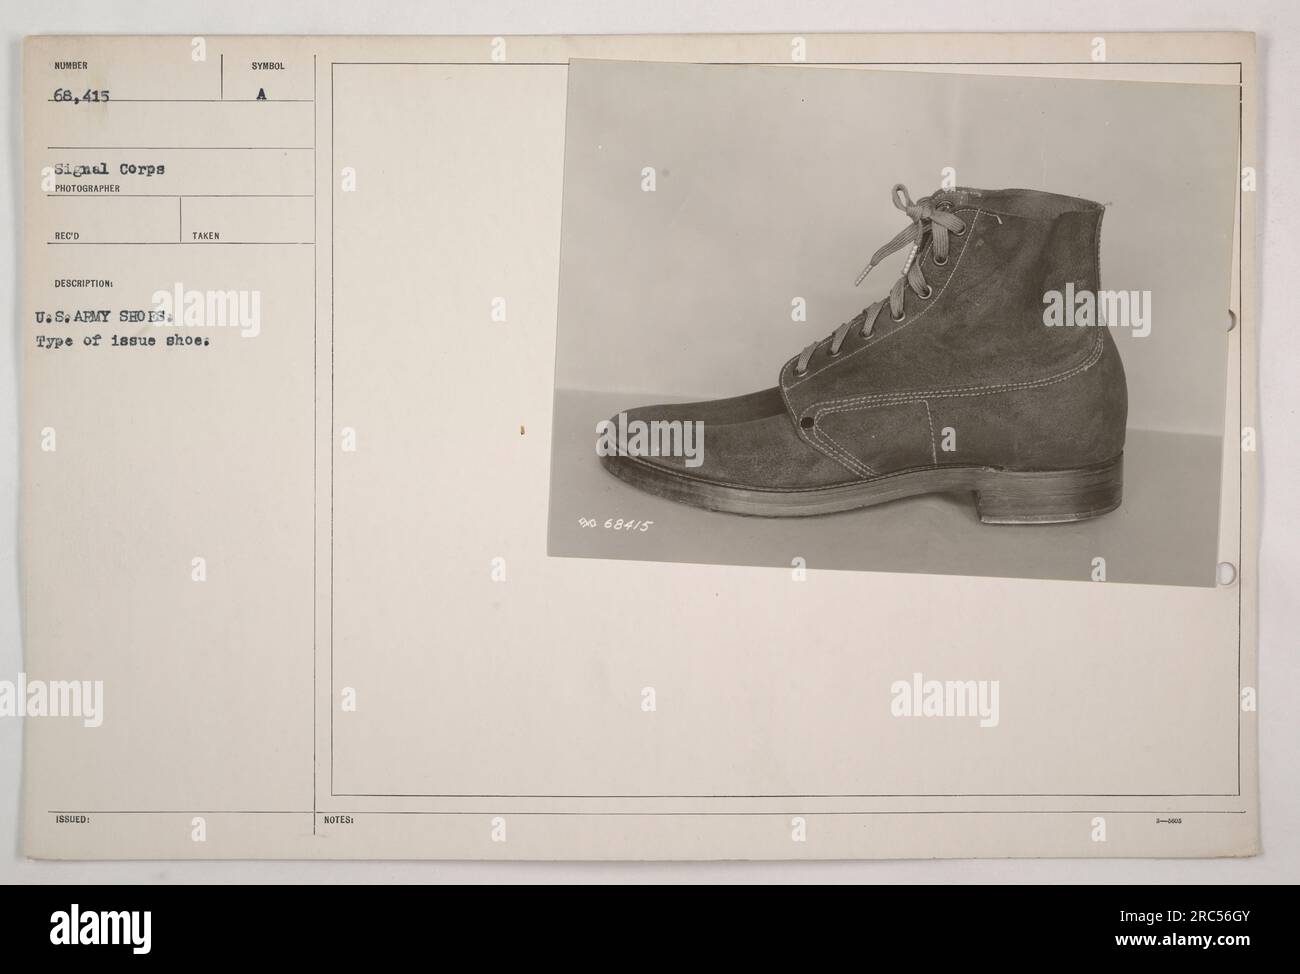 USA Soldat der Armee trägt Schuhe des Signalkorps Typ 68.415. Dieses Foto wurde aufgenommen, um die Schuhe zu dokumentieren, die Mitglieder der US-Armee tragen. Das Symbol auf den Schuhen weist darauf hin, dass sie dem Soldaten ausgestellt wurden. Die 9068415 1-Notation finden Sie auf den Schuhen. Stockfoto